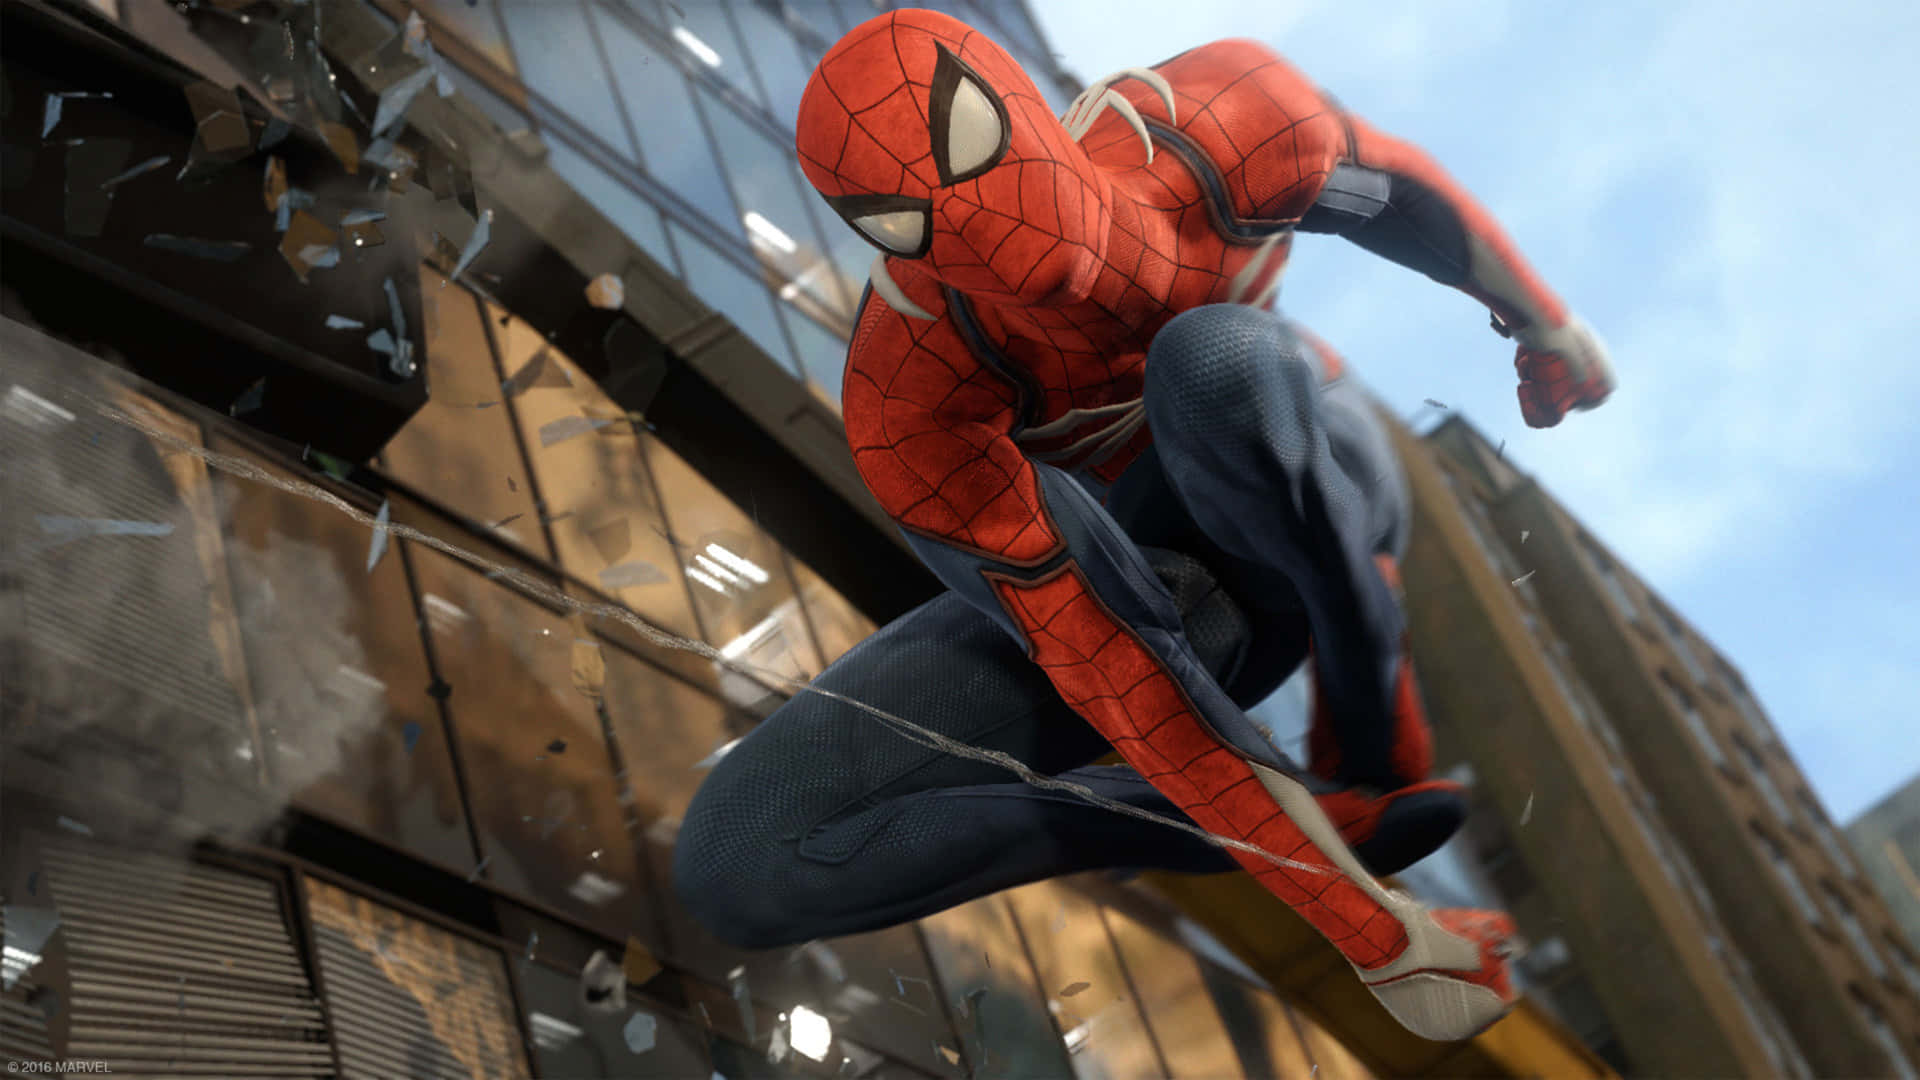 Peter Parker Tager På Sin Spændende Anden Identitet - Spiderman.